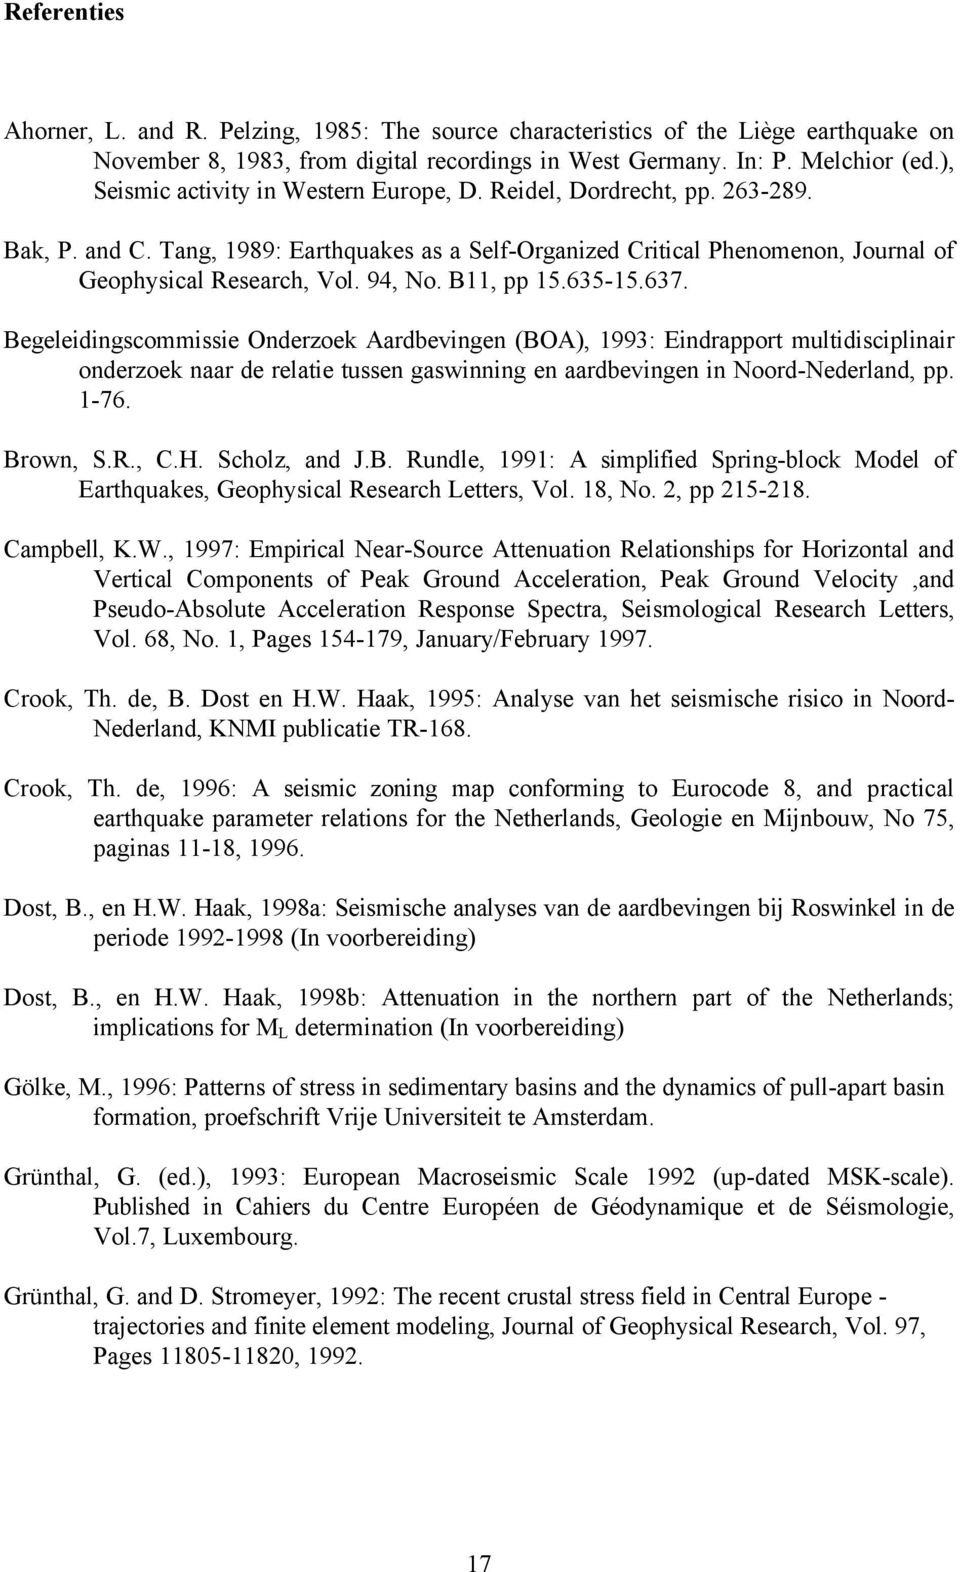 B11, pp 15.635-15.637. Begeleidingscommissie Onderzoek Aardbevingen (BOA), 1993: Eindrapport multidisciplinair onderzoek naar de relatie tussen gaswinning en aardbevingen in Noord-Nederland, pp. 1-76.